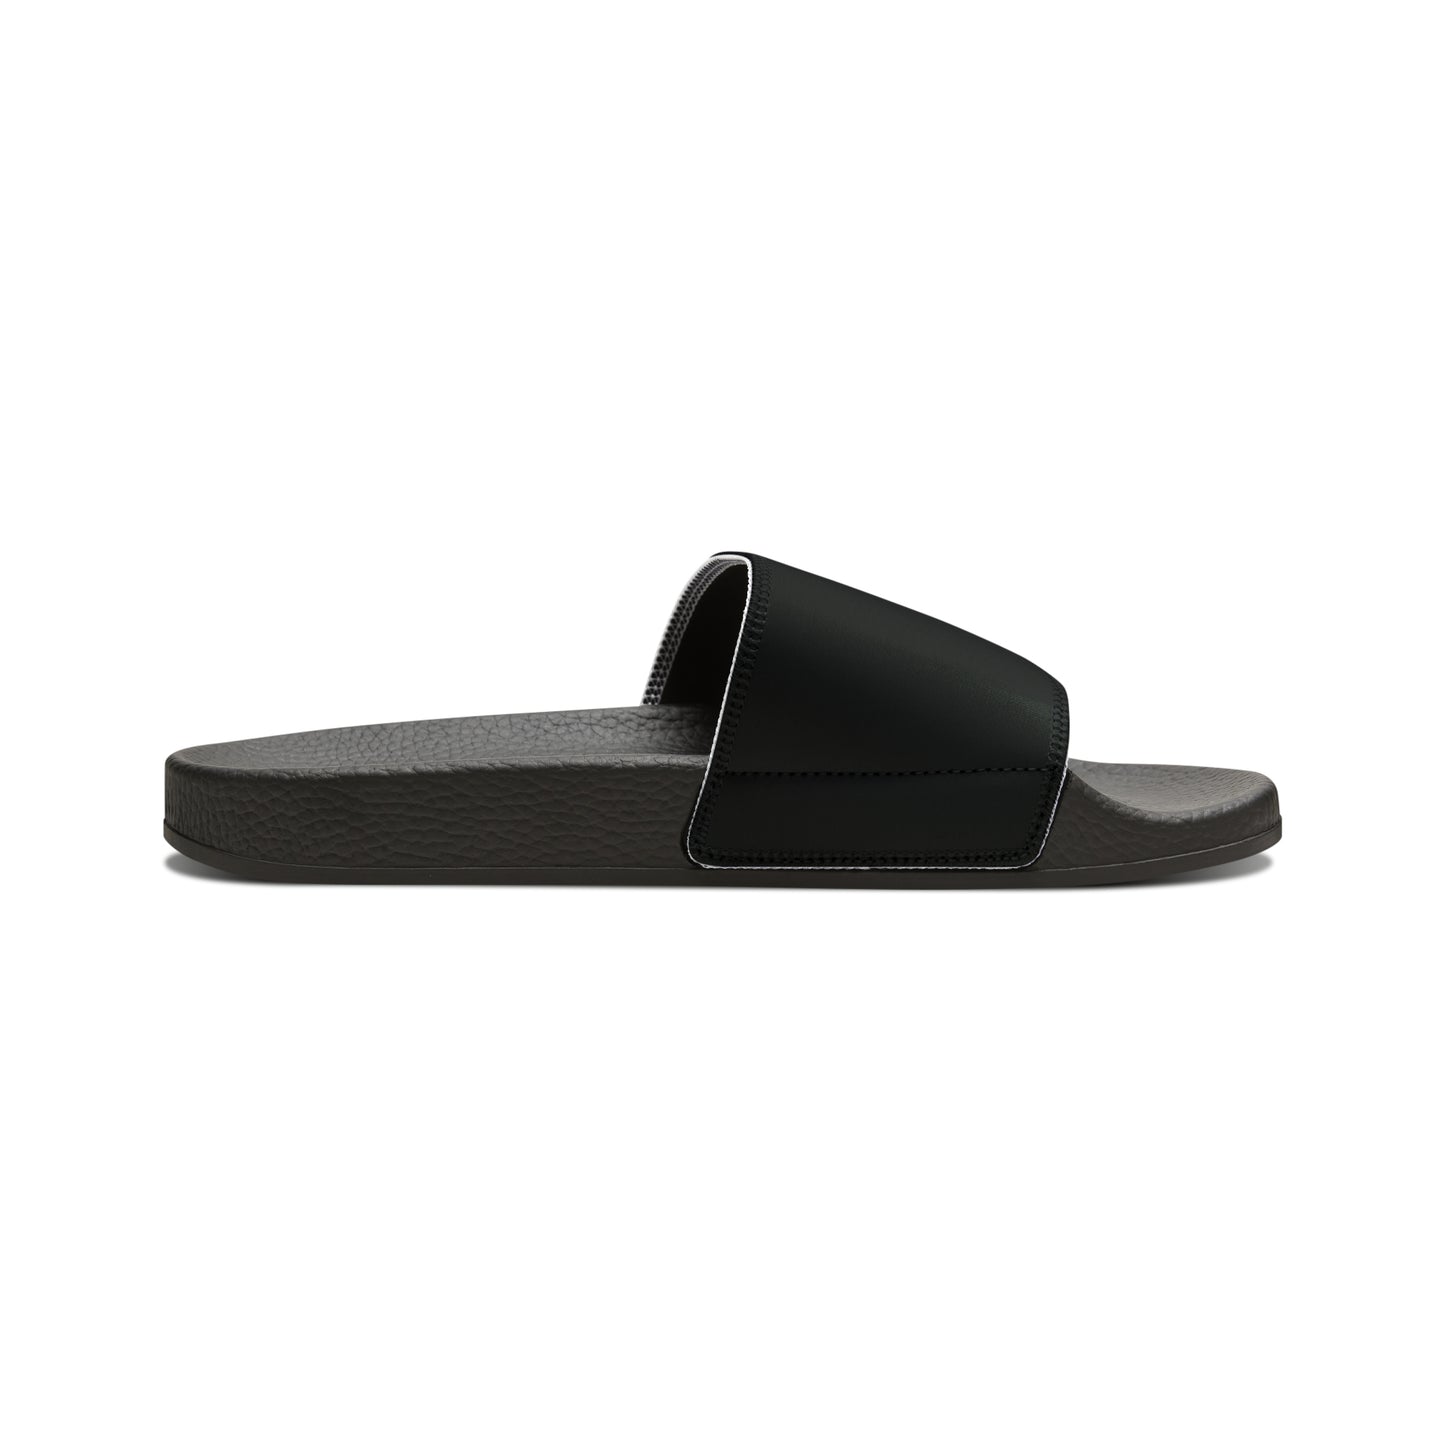 GirlFight Logo Slide Sandals - Black